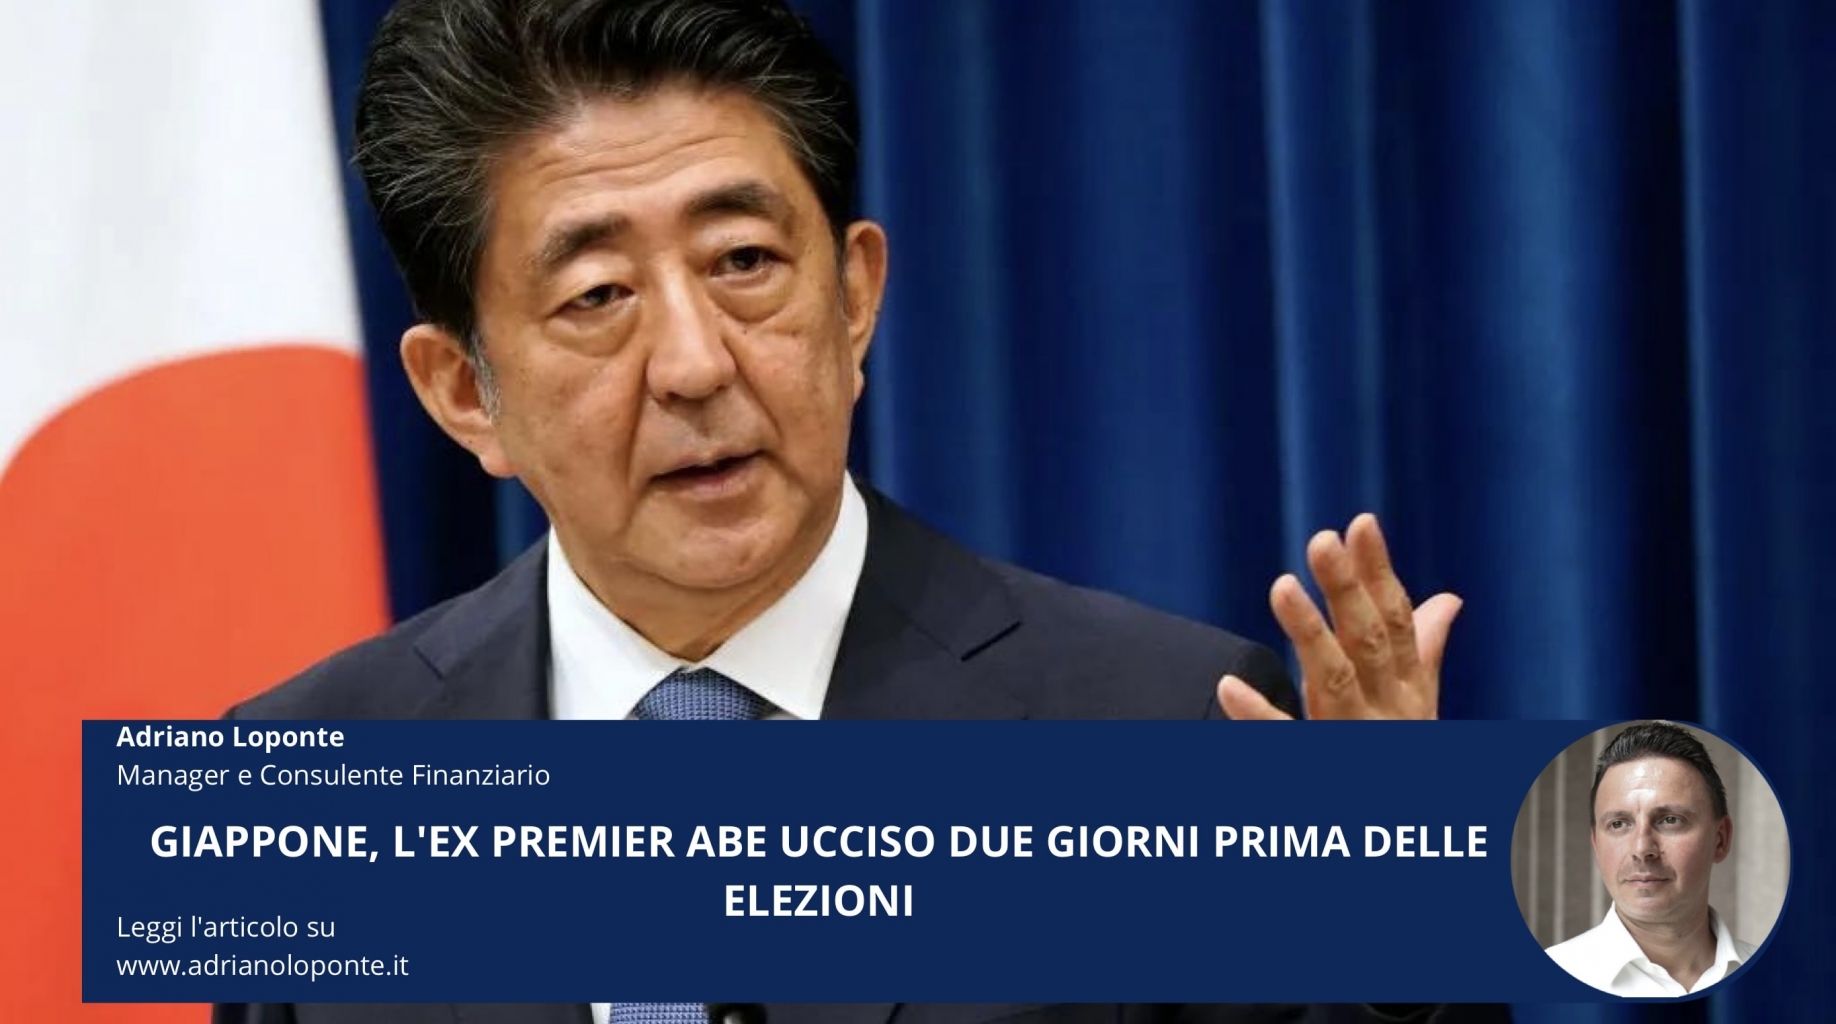 Giappone, alle elezioni vincono i conservatori dell'ex premier Abe ucciso due giorni prima in un comizio